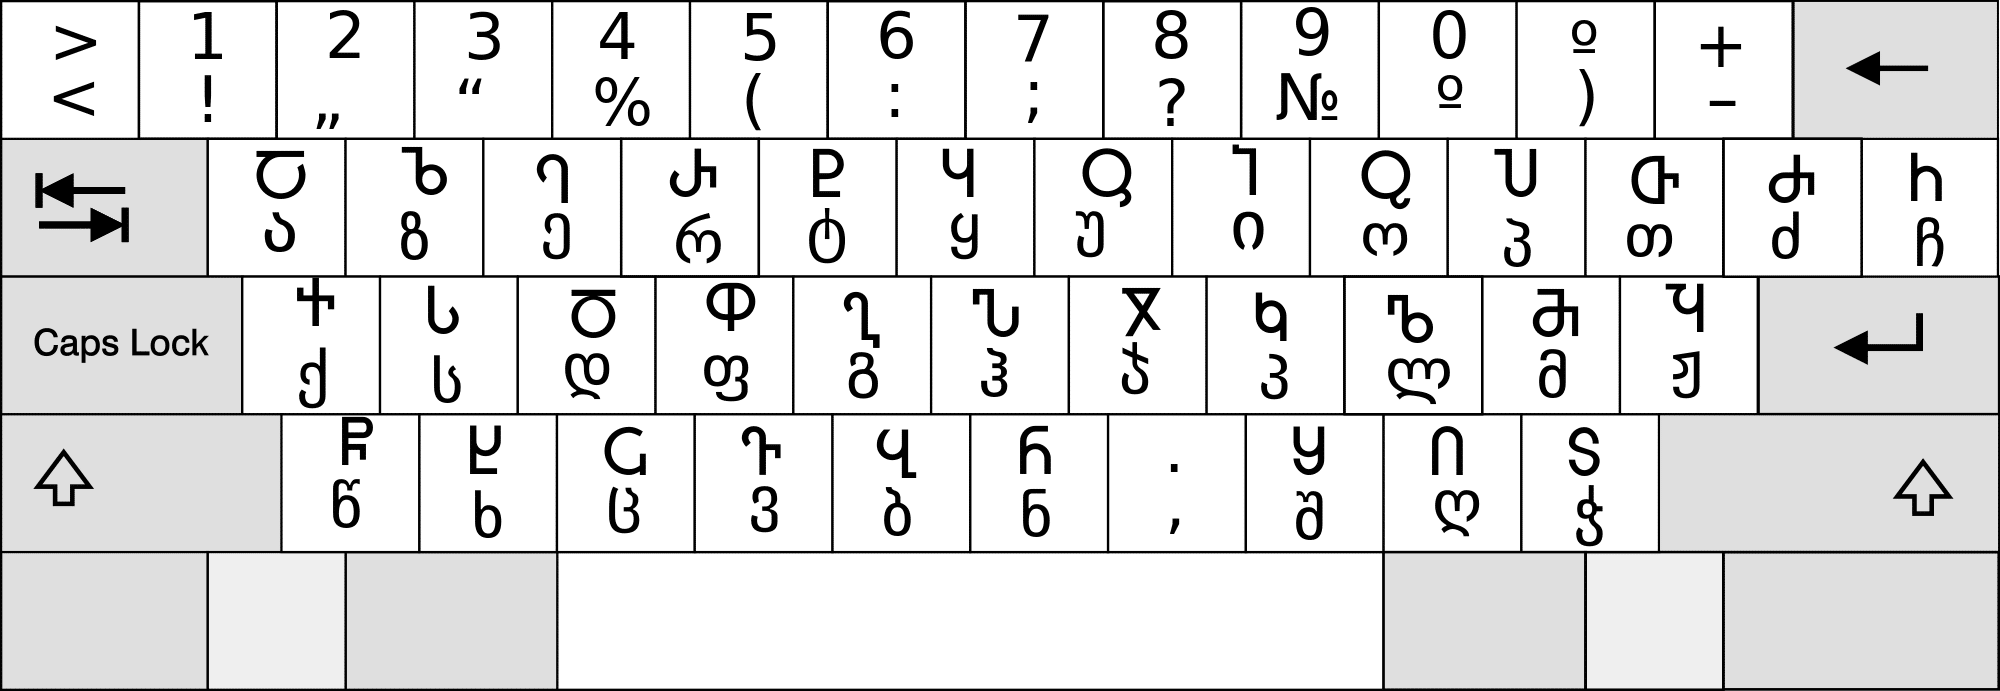 Georgian Keyboard Online